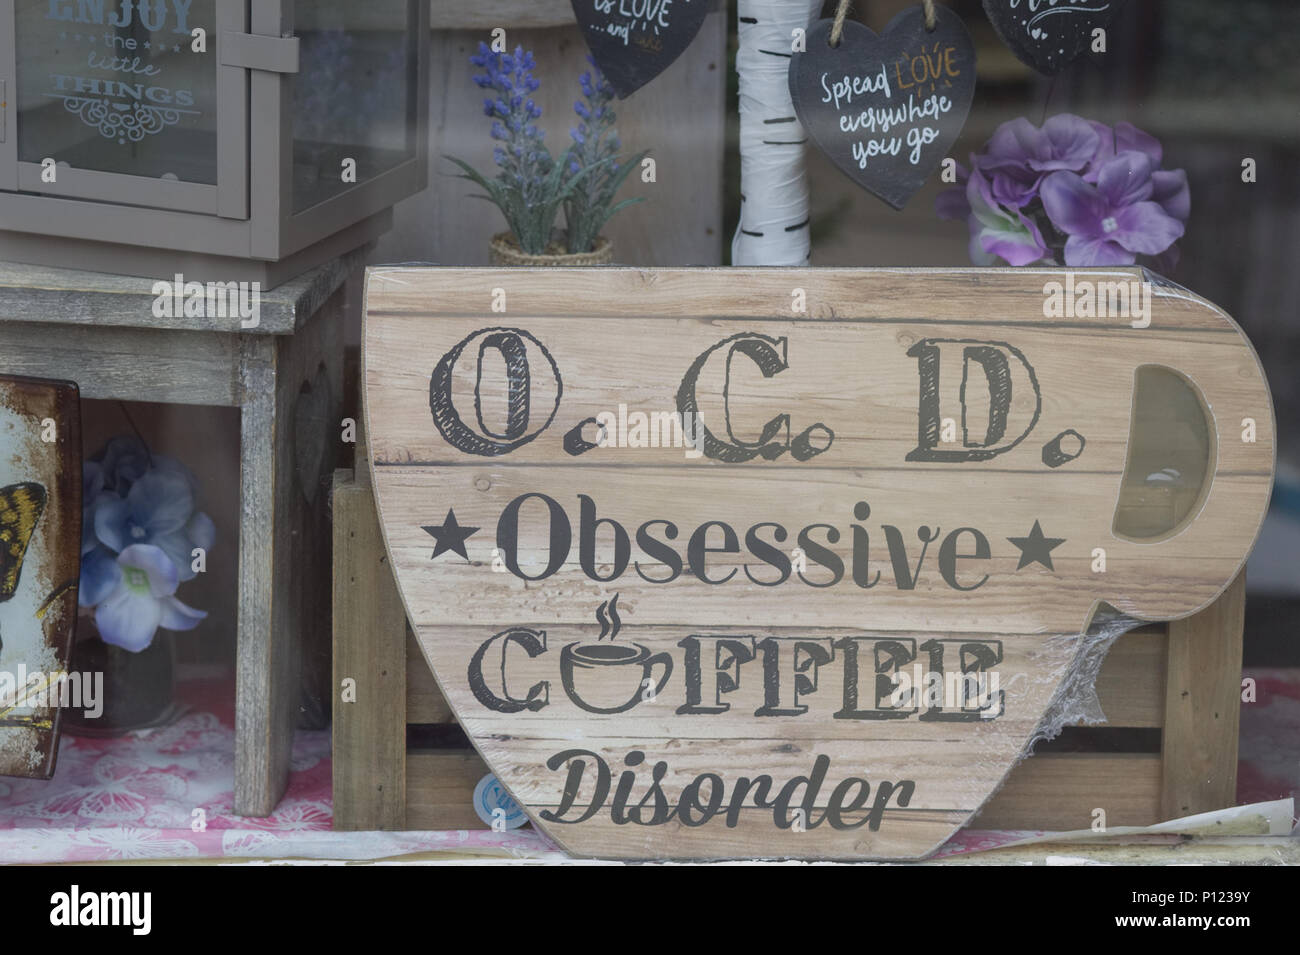 O.C.D Obsessive/Störung, riesige hölzerne Schale in einem Schaufenster Stockfoto